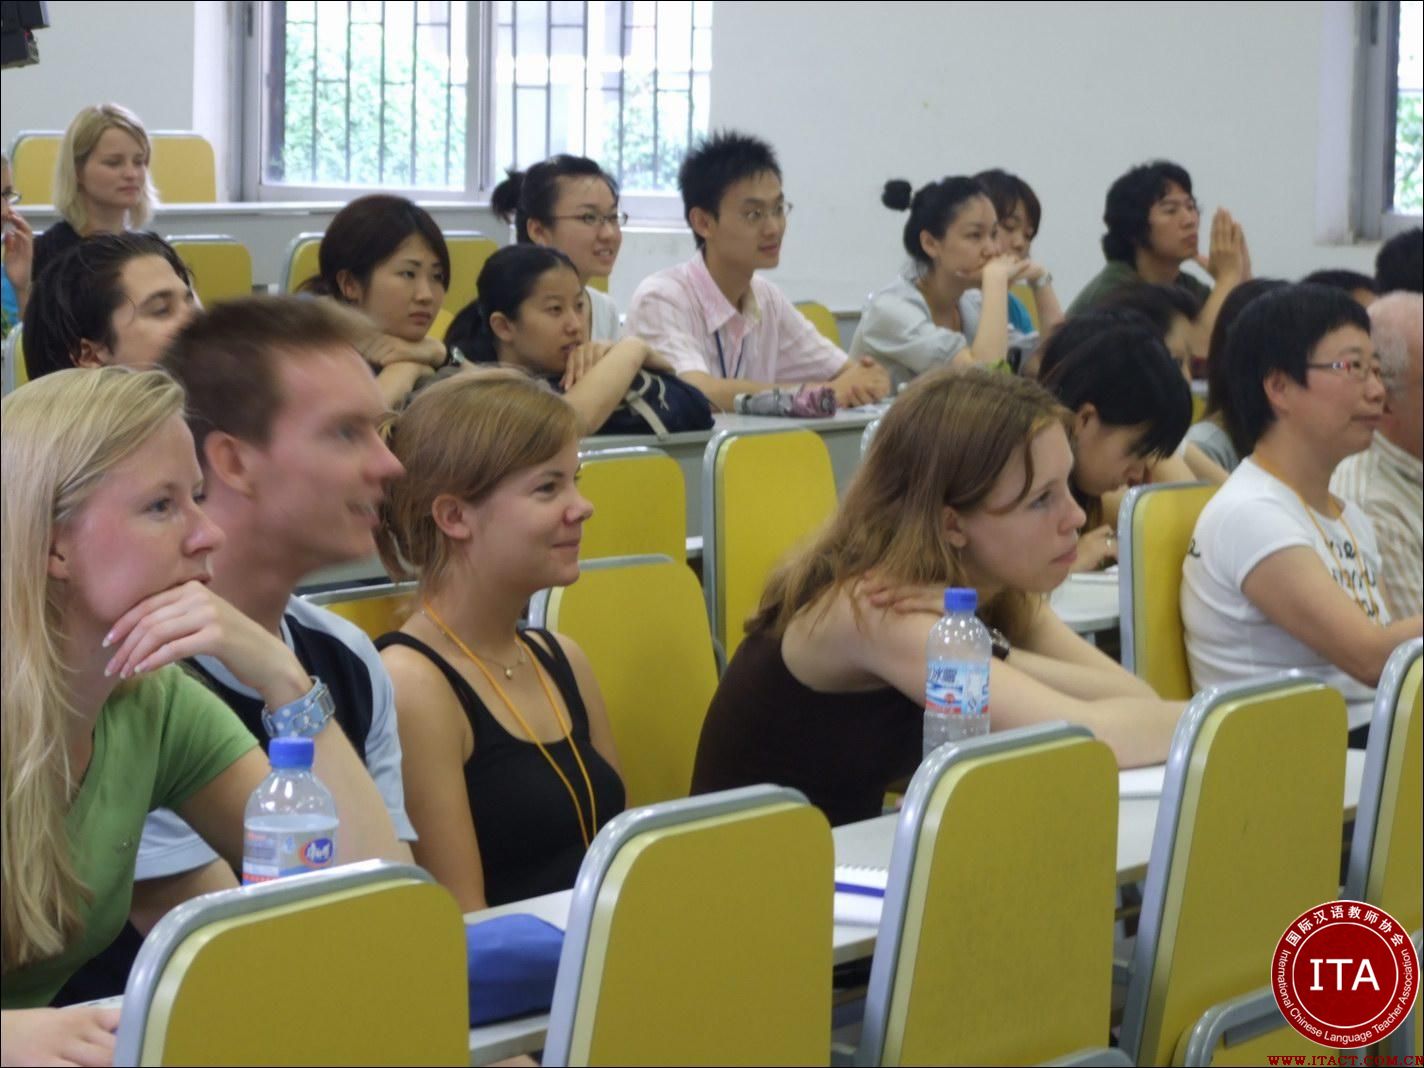 中国学生赴新西兰合作学校交流 感受异国文化